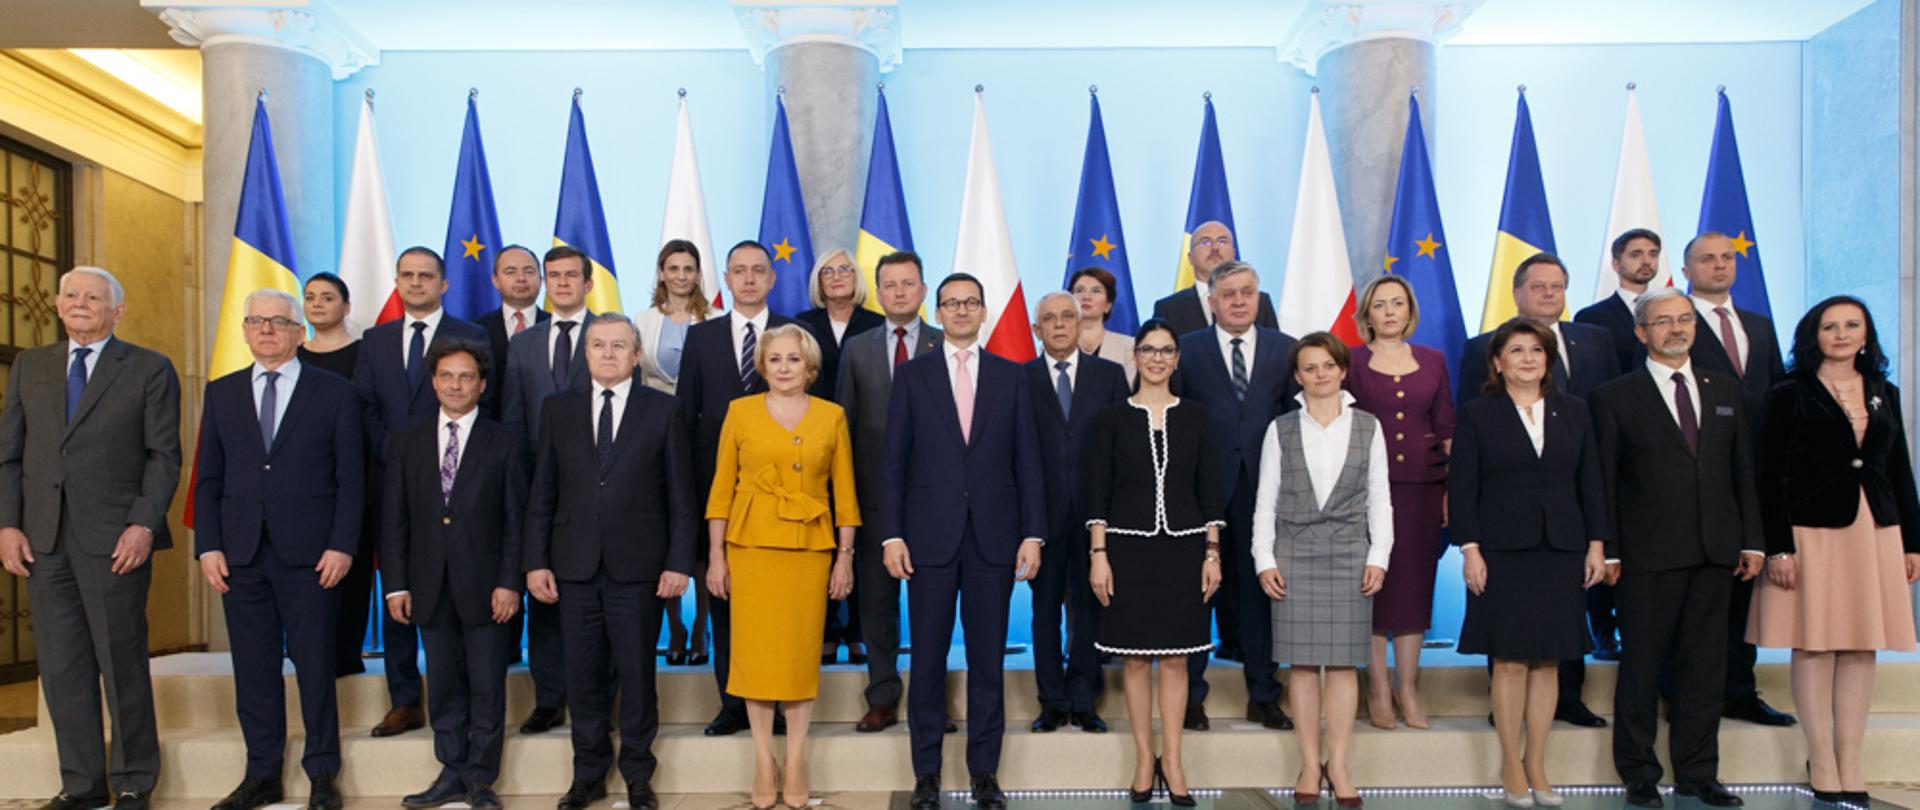 Spotkanie odbyło się w ramach polsko-rumuńskich konsultacji międzyrządowych